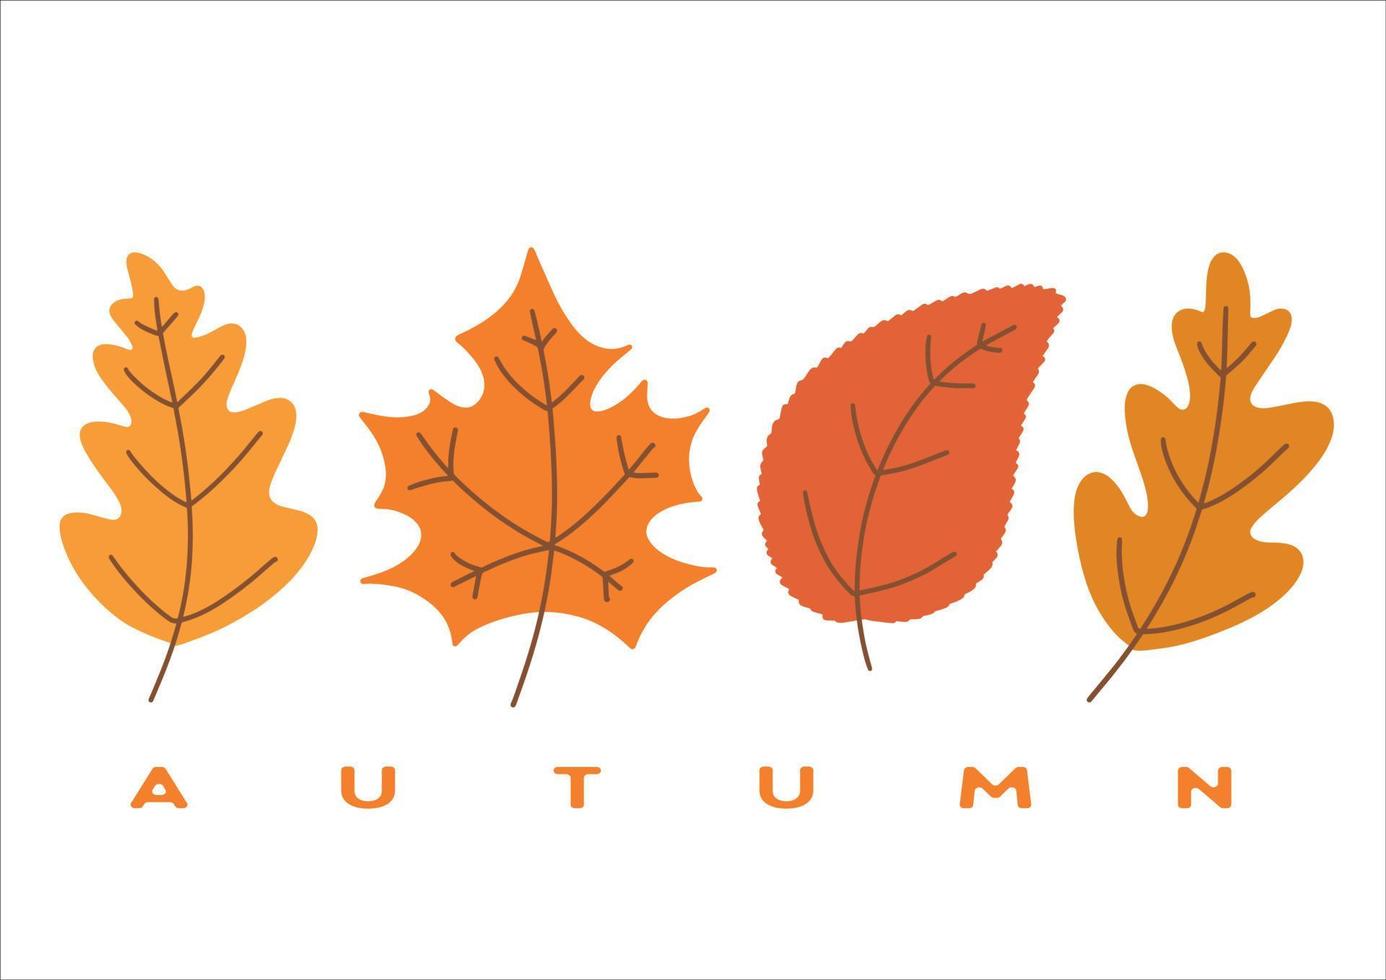 Reihe von bunten Herbstblättern. vergilbte Eichen- und Ahornblätter. saisonale Vektorillustration. Vorlage für dekoratives Design. vektor